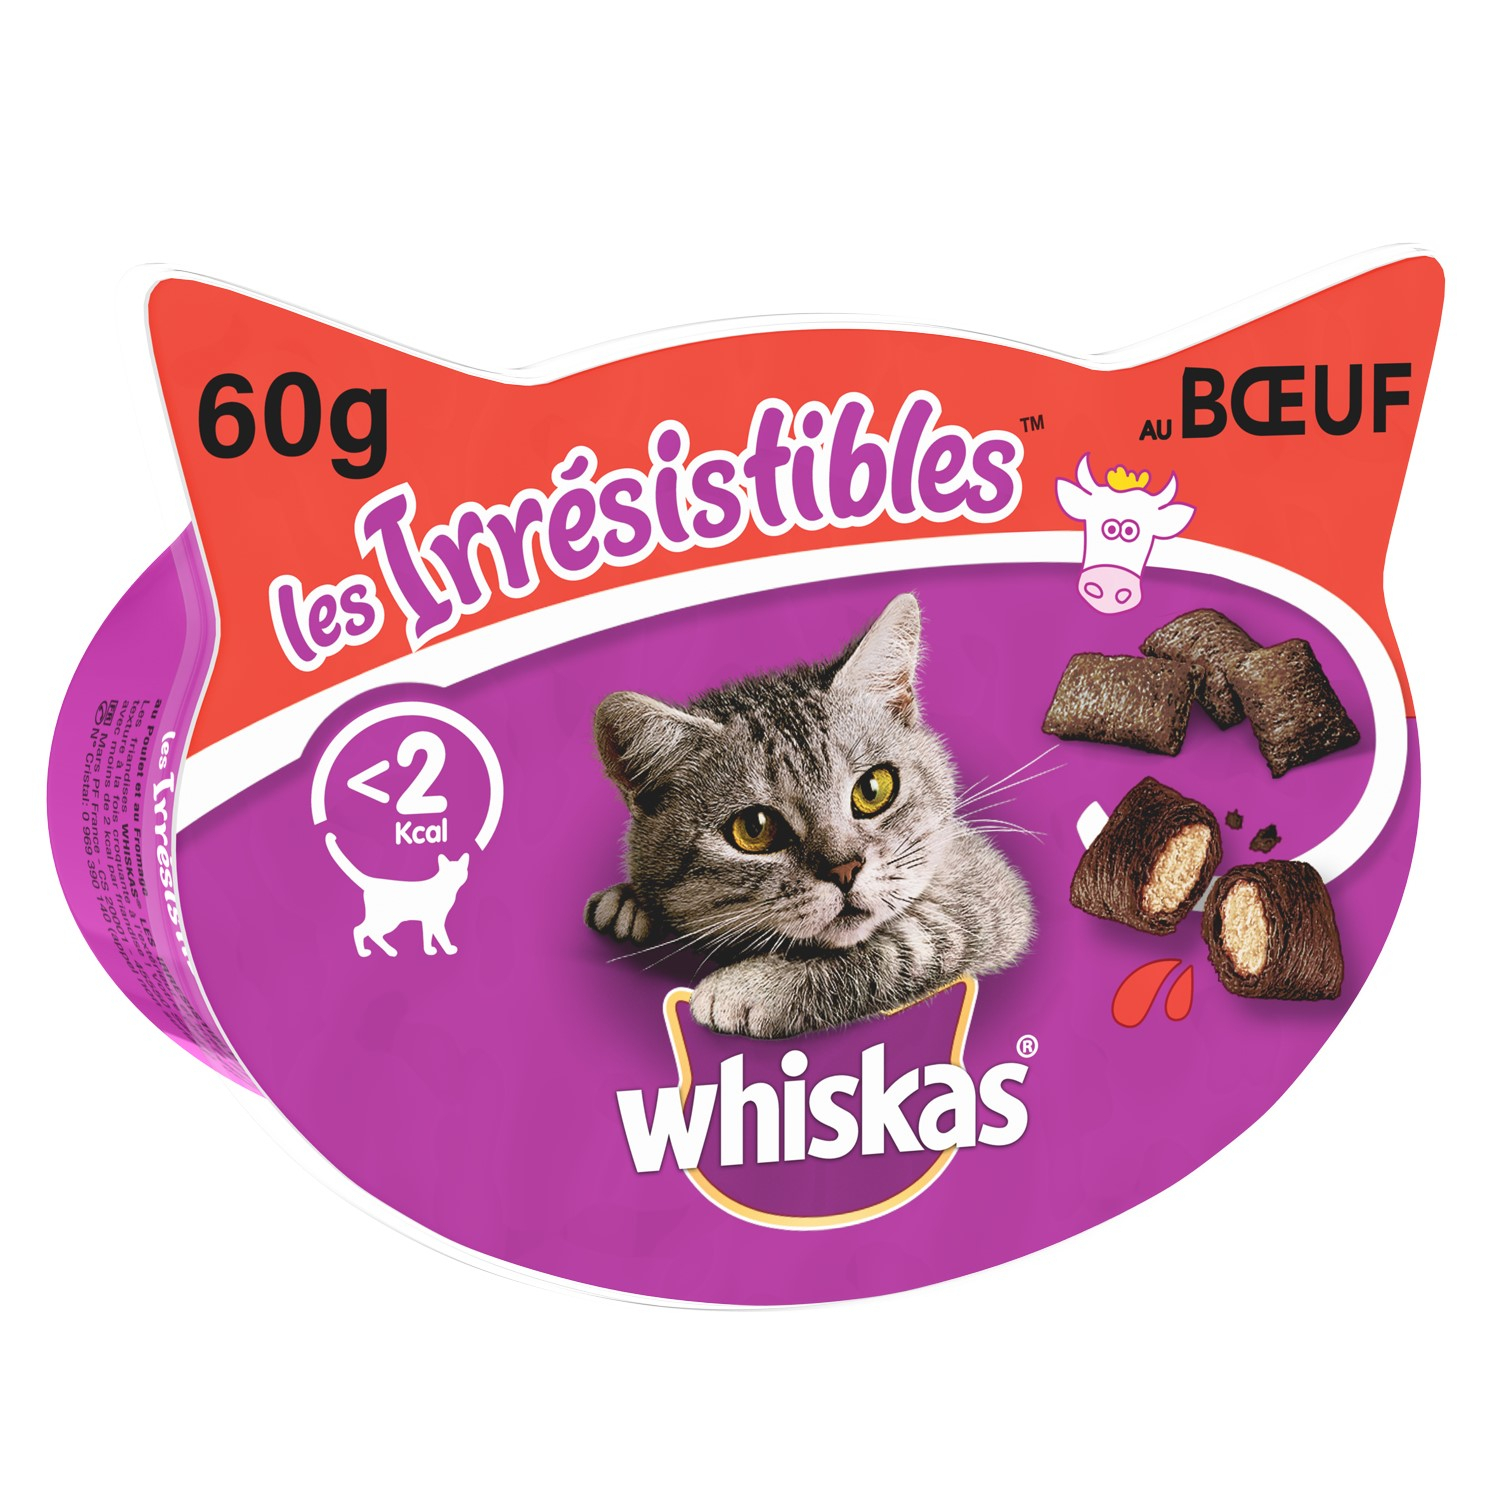 Knuspertaschen mit Rind 50g - Leckerlis für Katzen